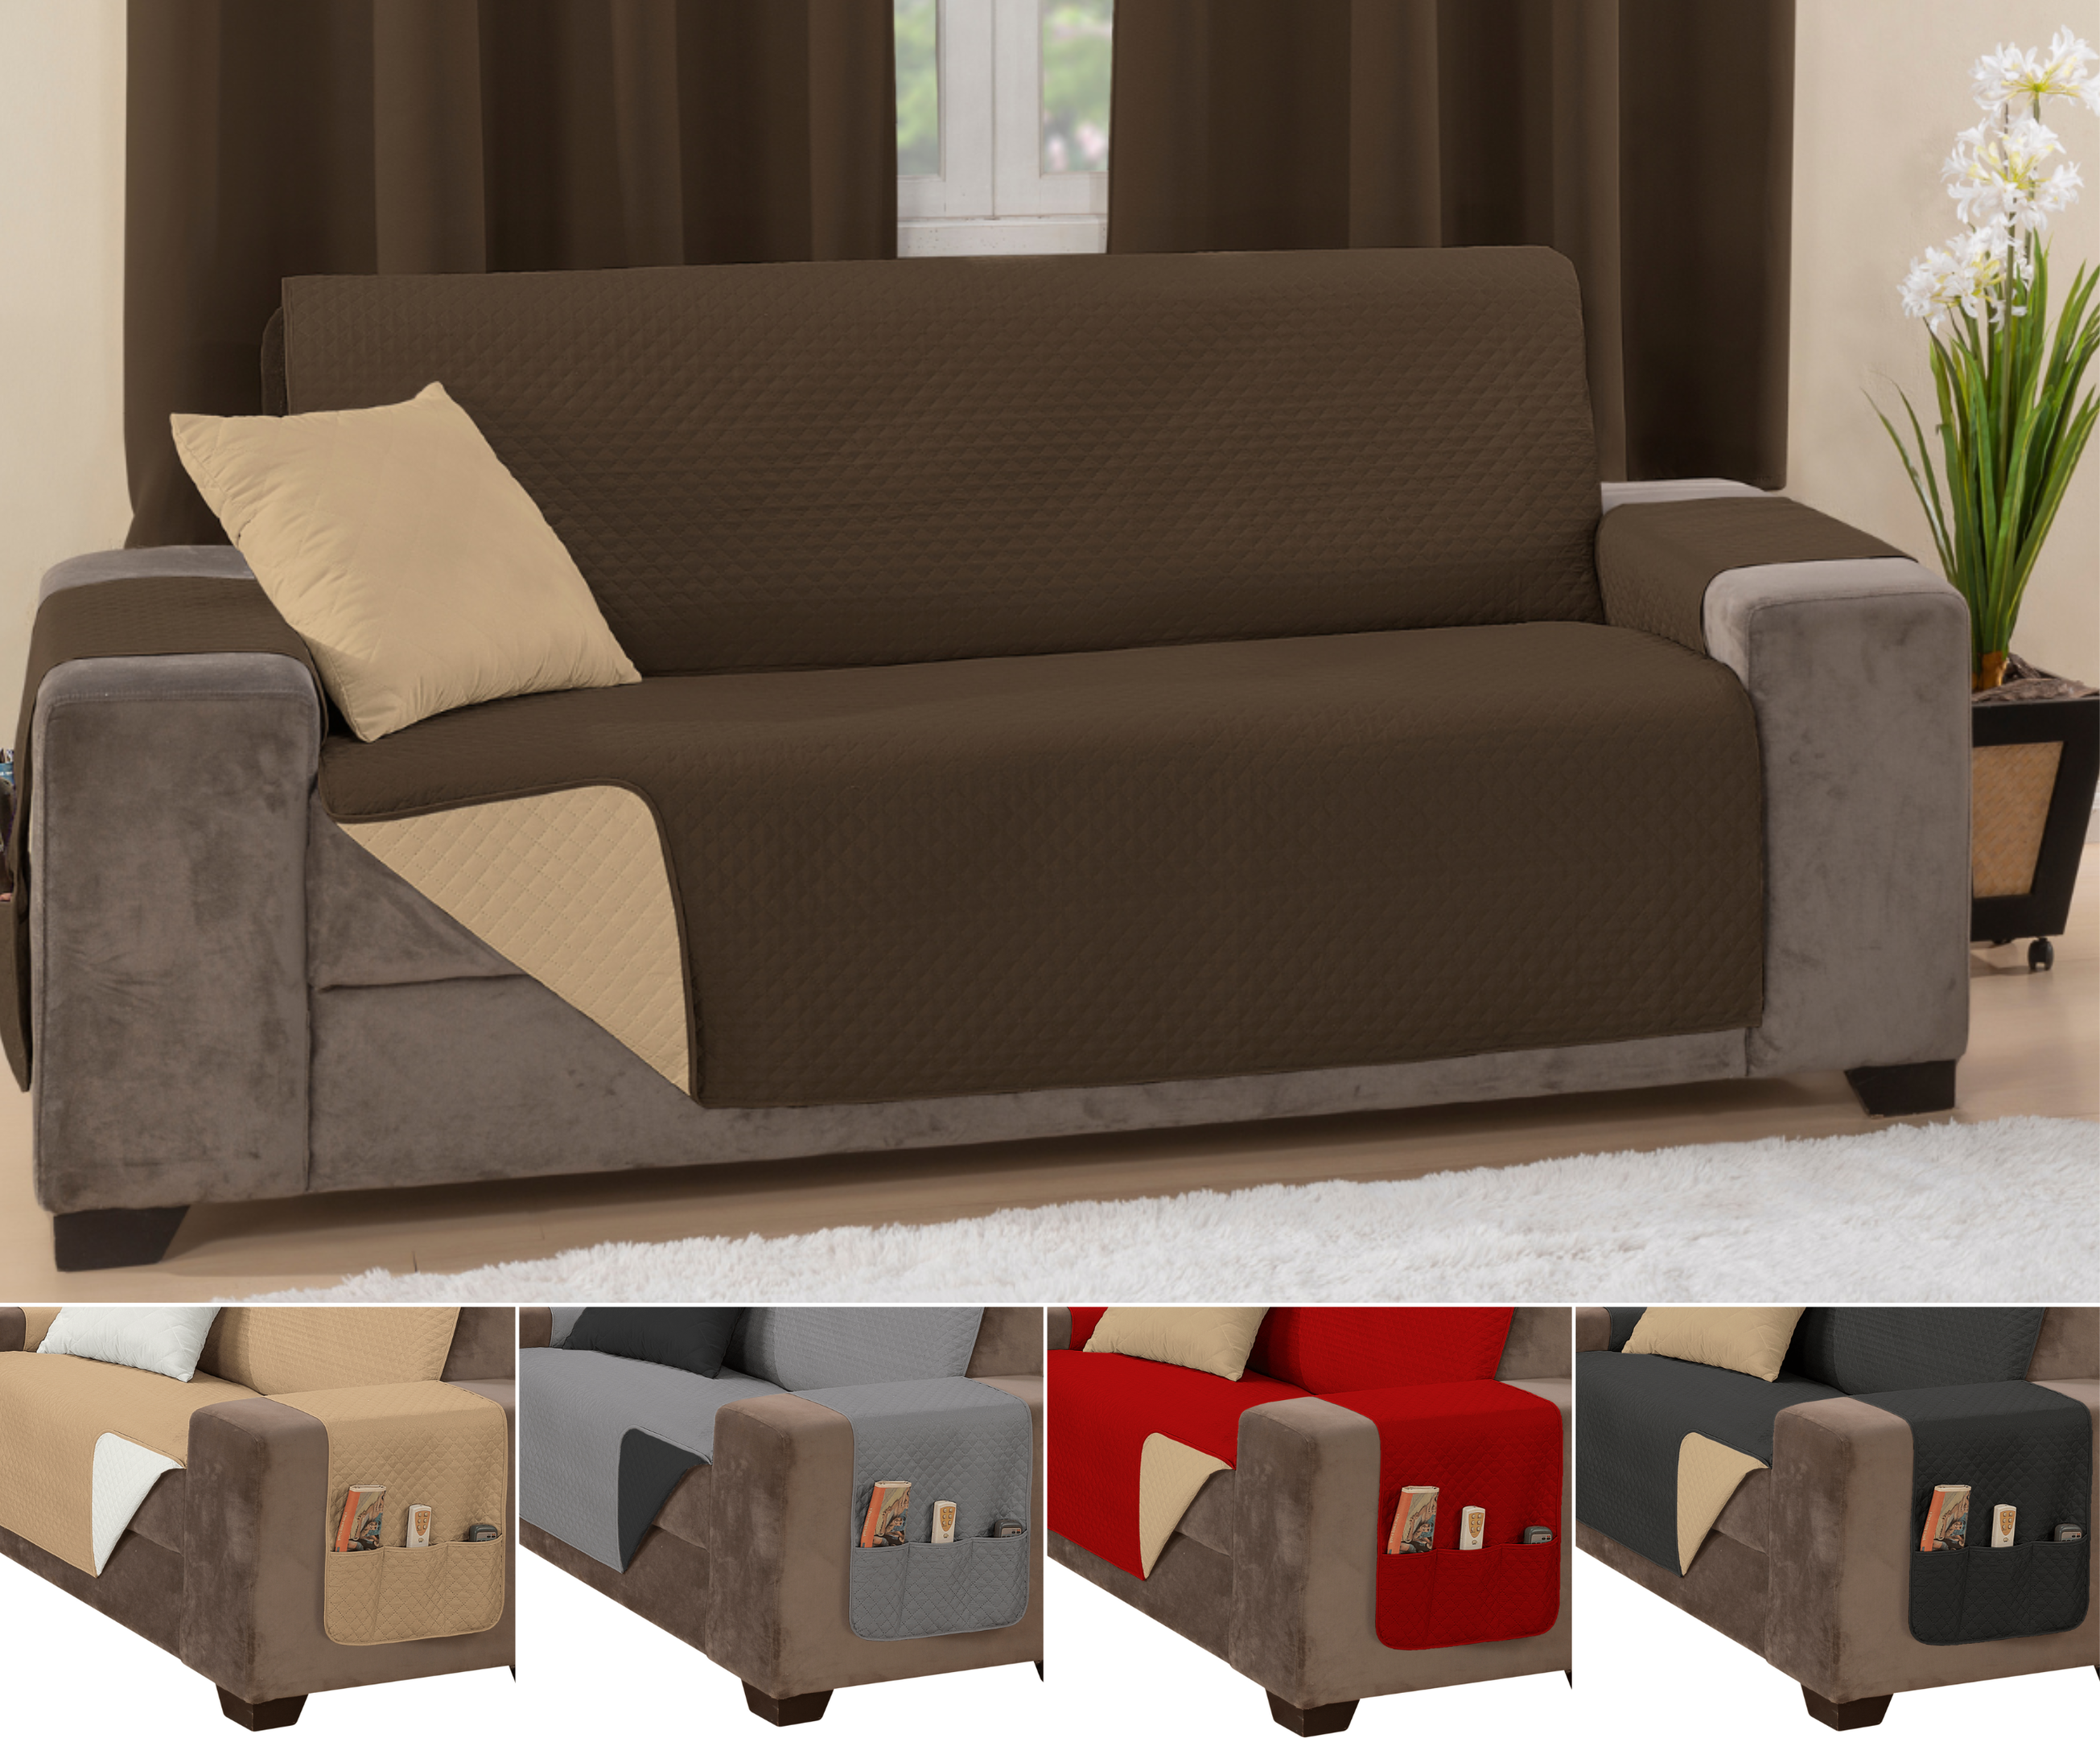 Capa sofá impermeavel ultrassonico tamanho padrão 2 lugares 1,1m marrom e caqui - 1